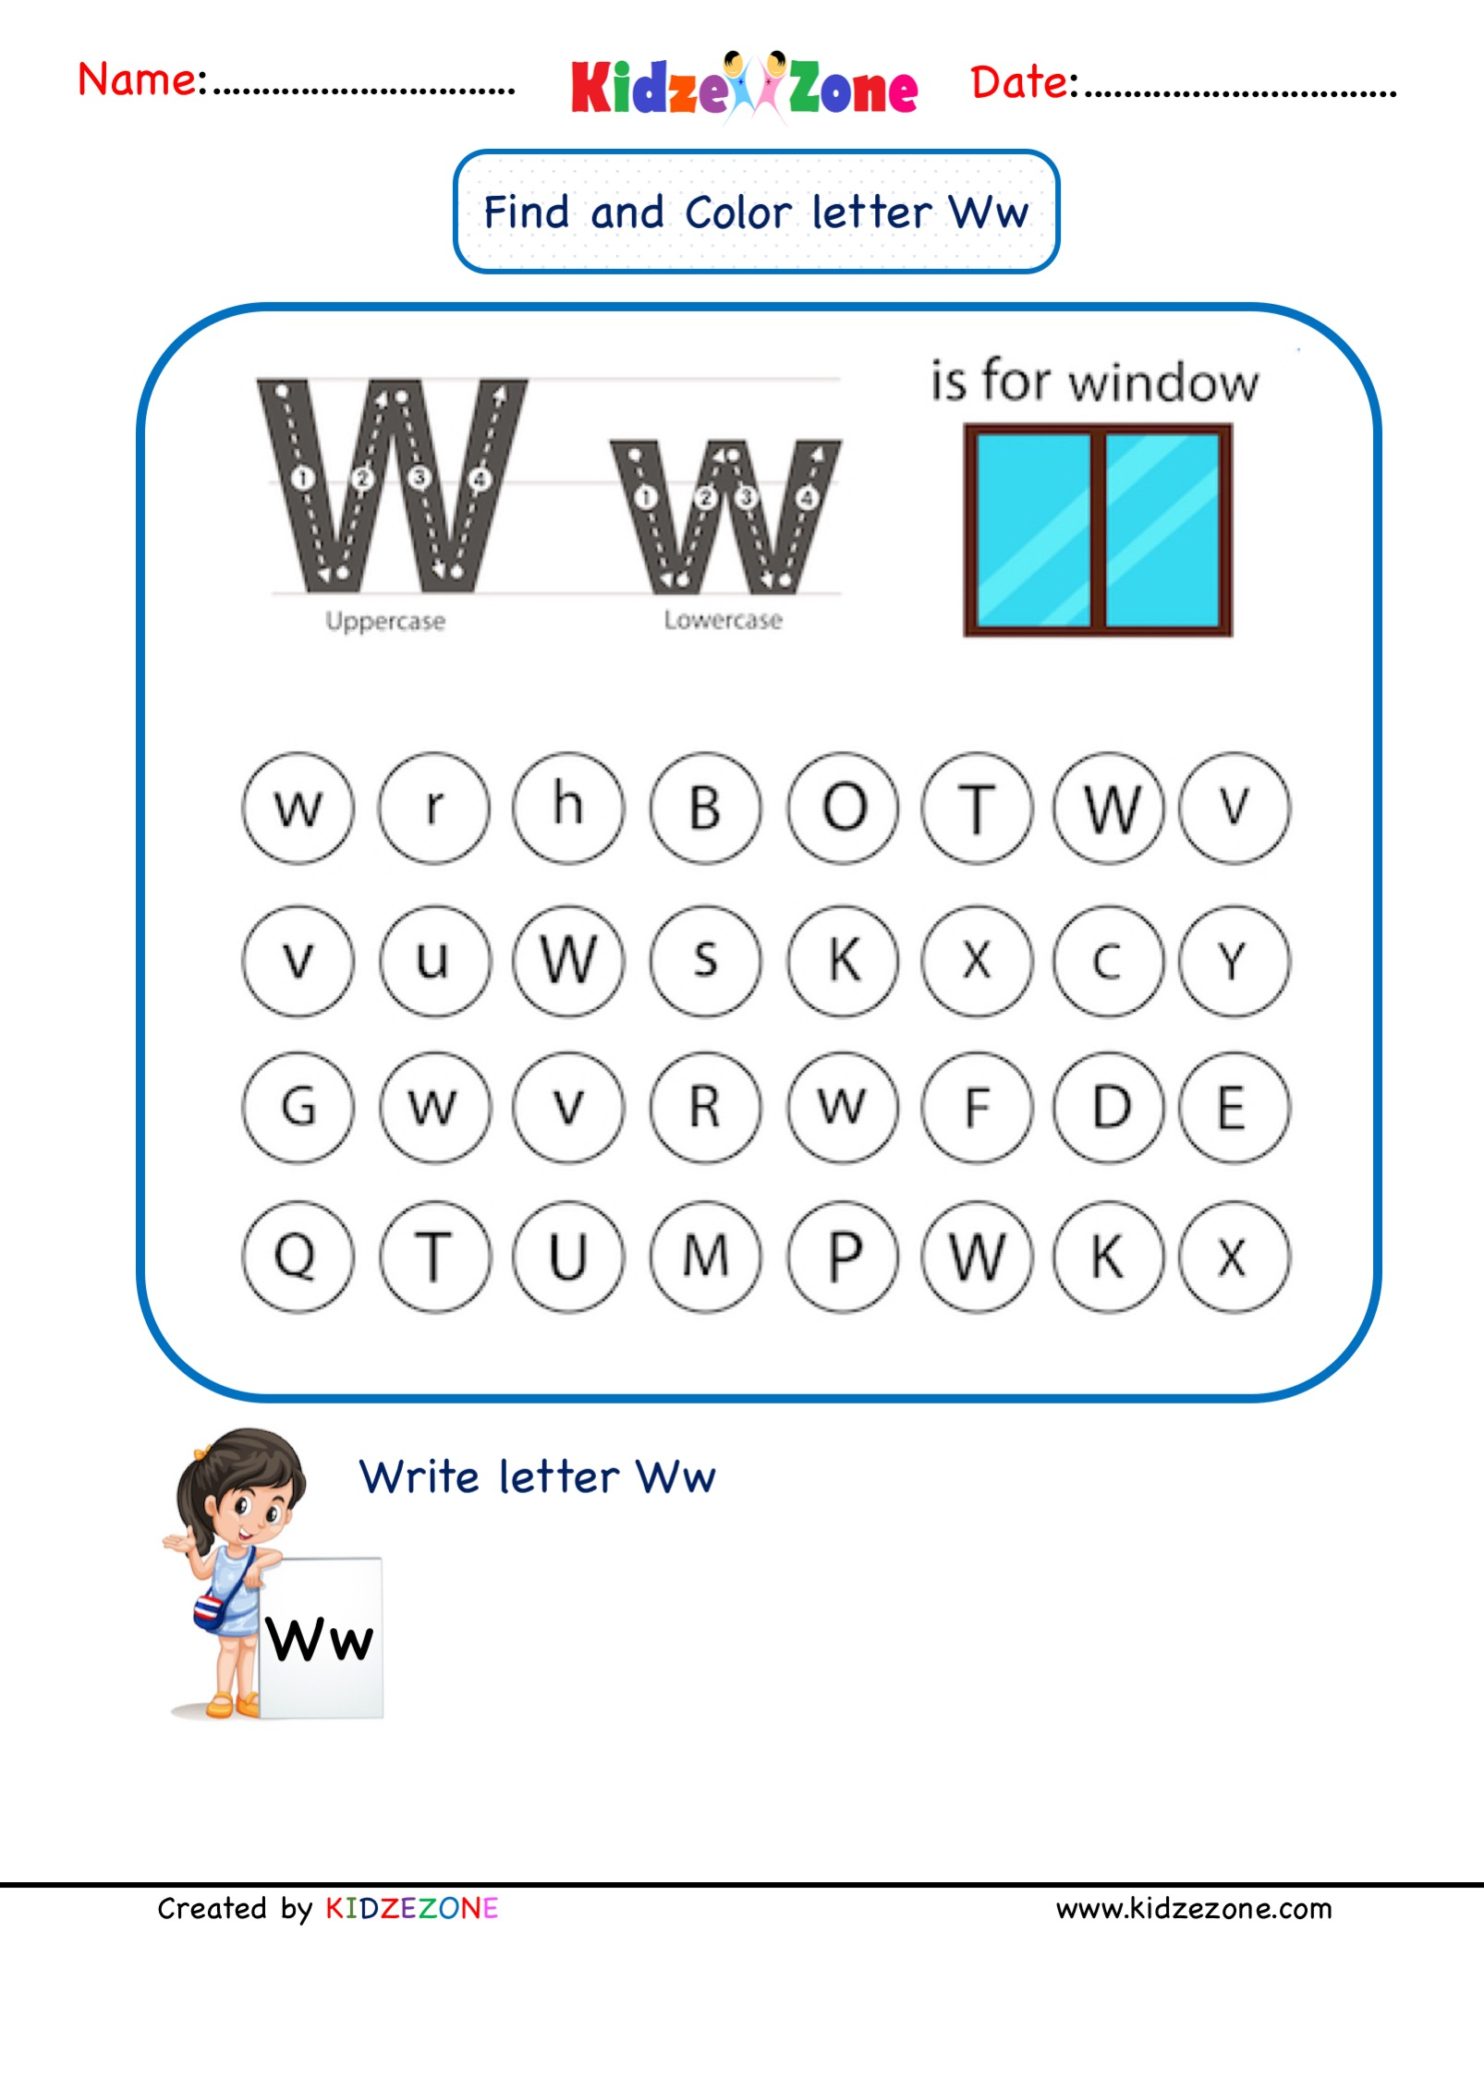 kindergarten-letter-w-worksheets-find-and-color-kidzezone